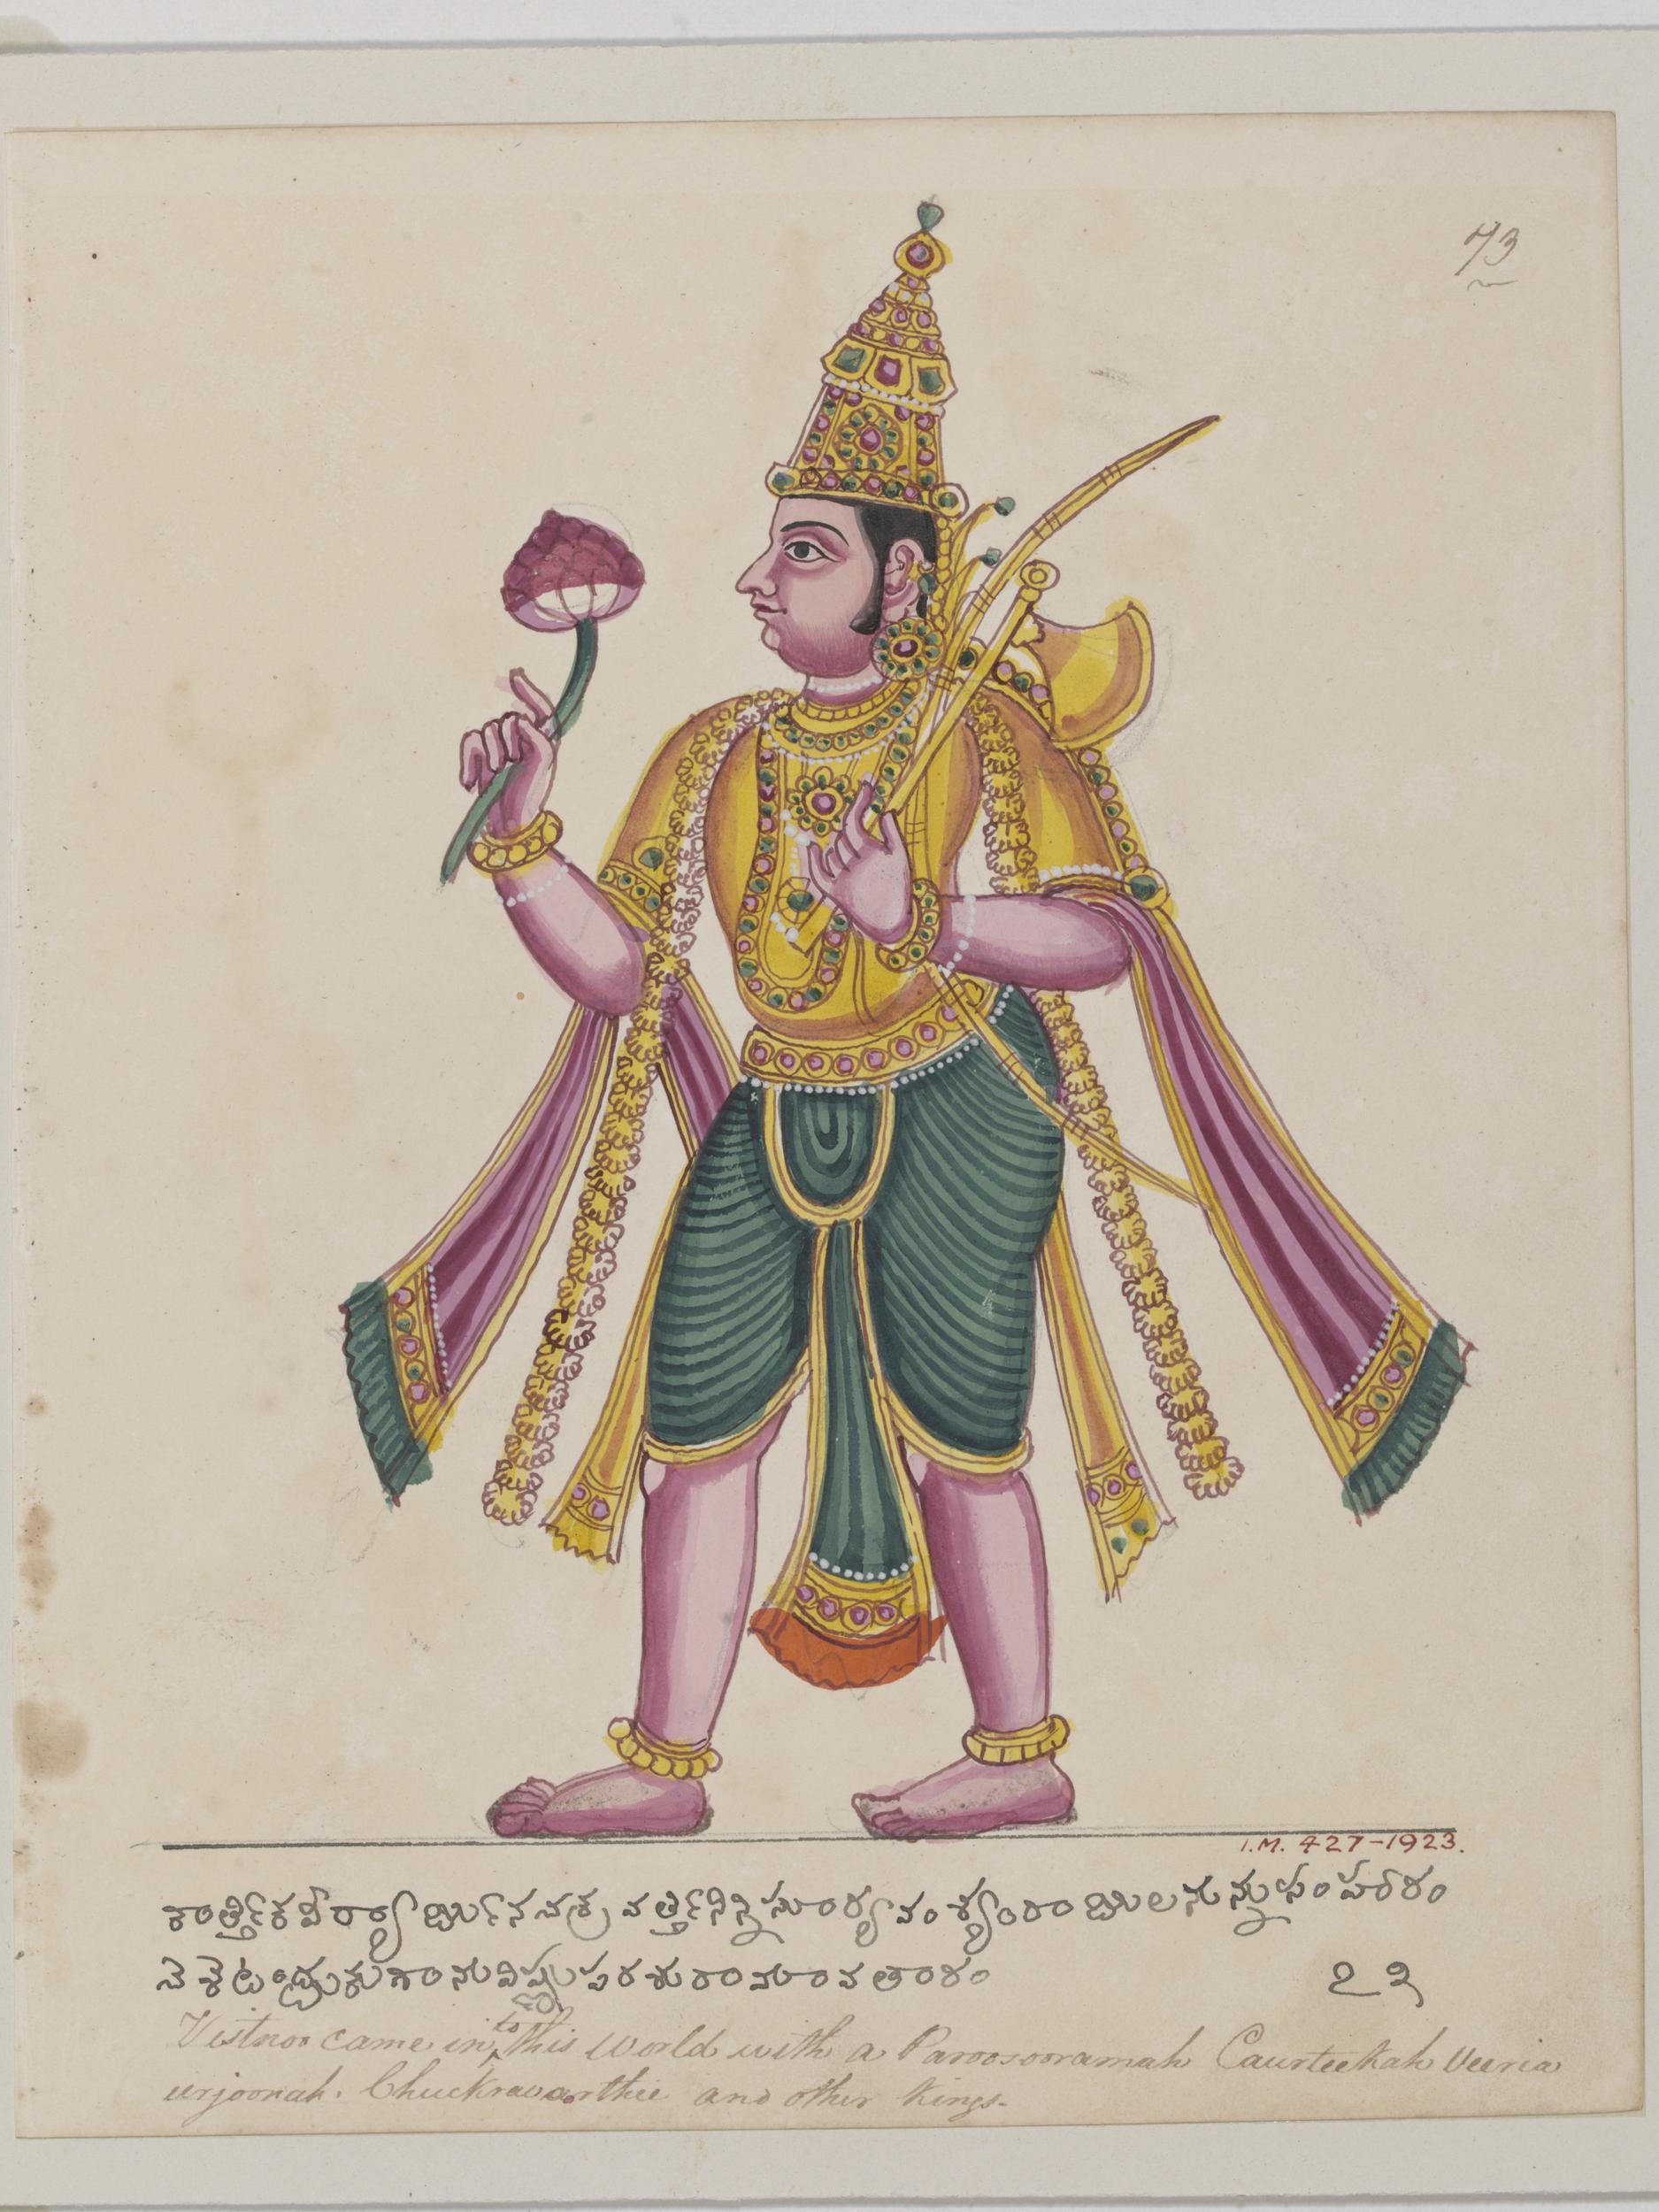 Balta ve Lotus Goncası Tutan Parashurama by Bilinmeyen Sanatçı - 1825 - 22 x 18 cm 